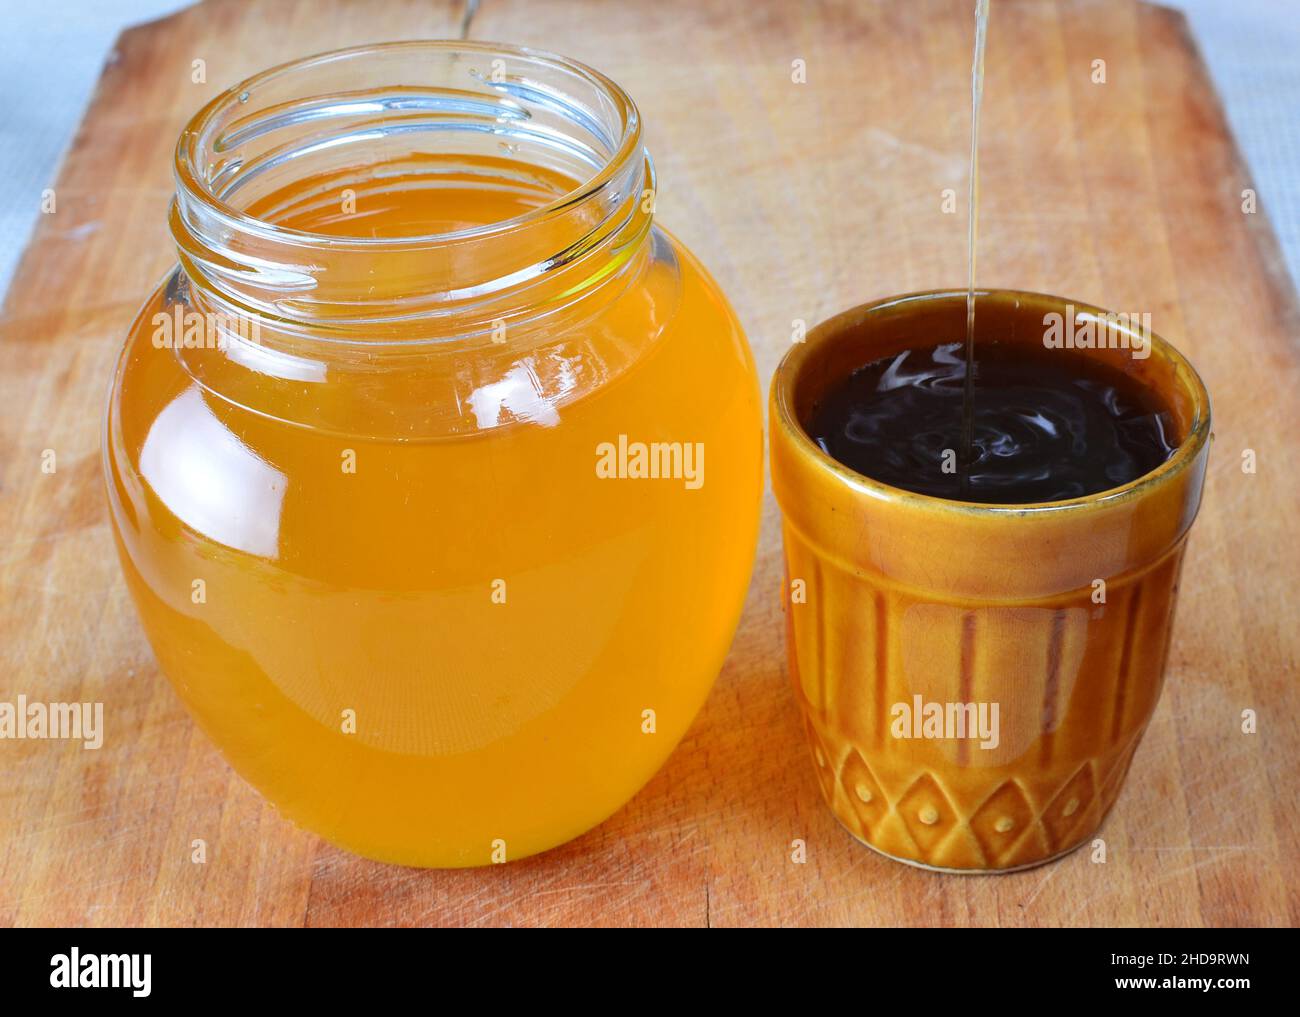 Miele biologico fresco naturale che viene versato in una piccola tazza rustica accanto ad un vaso pieno di miele. Foto Stock